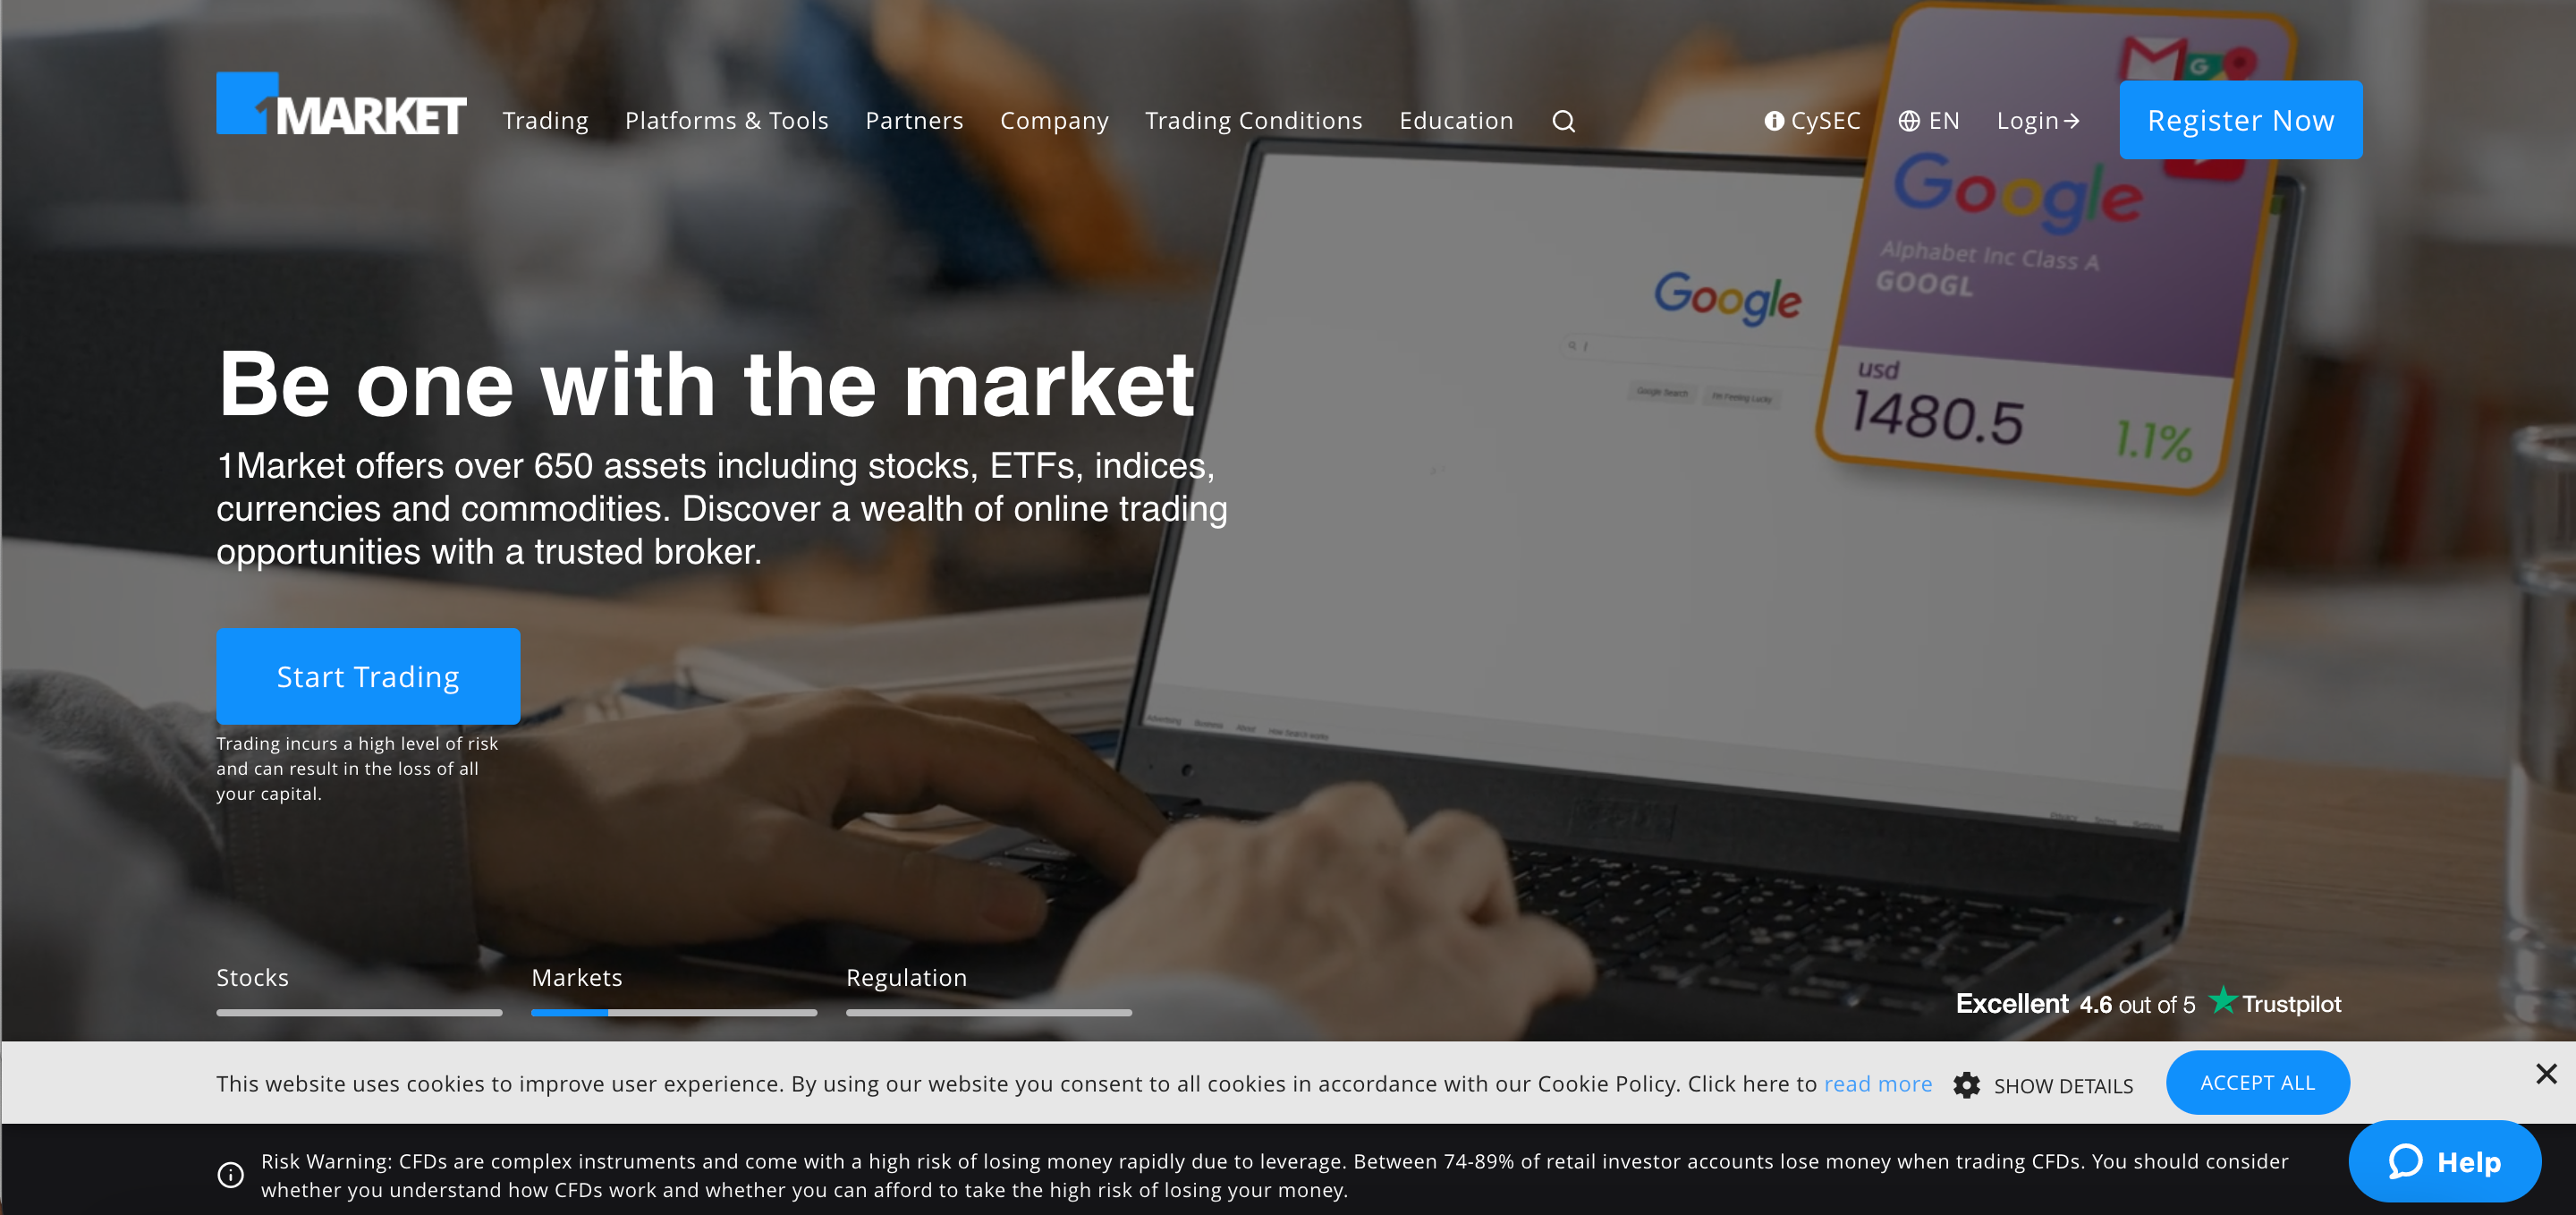 1 Market website